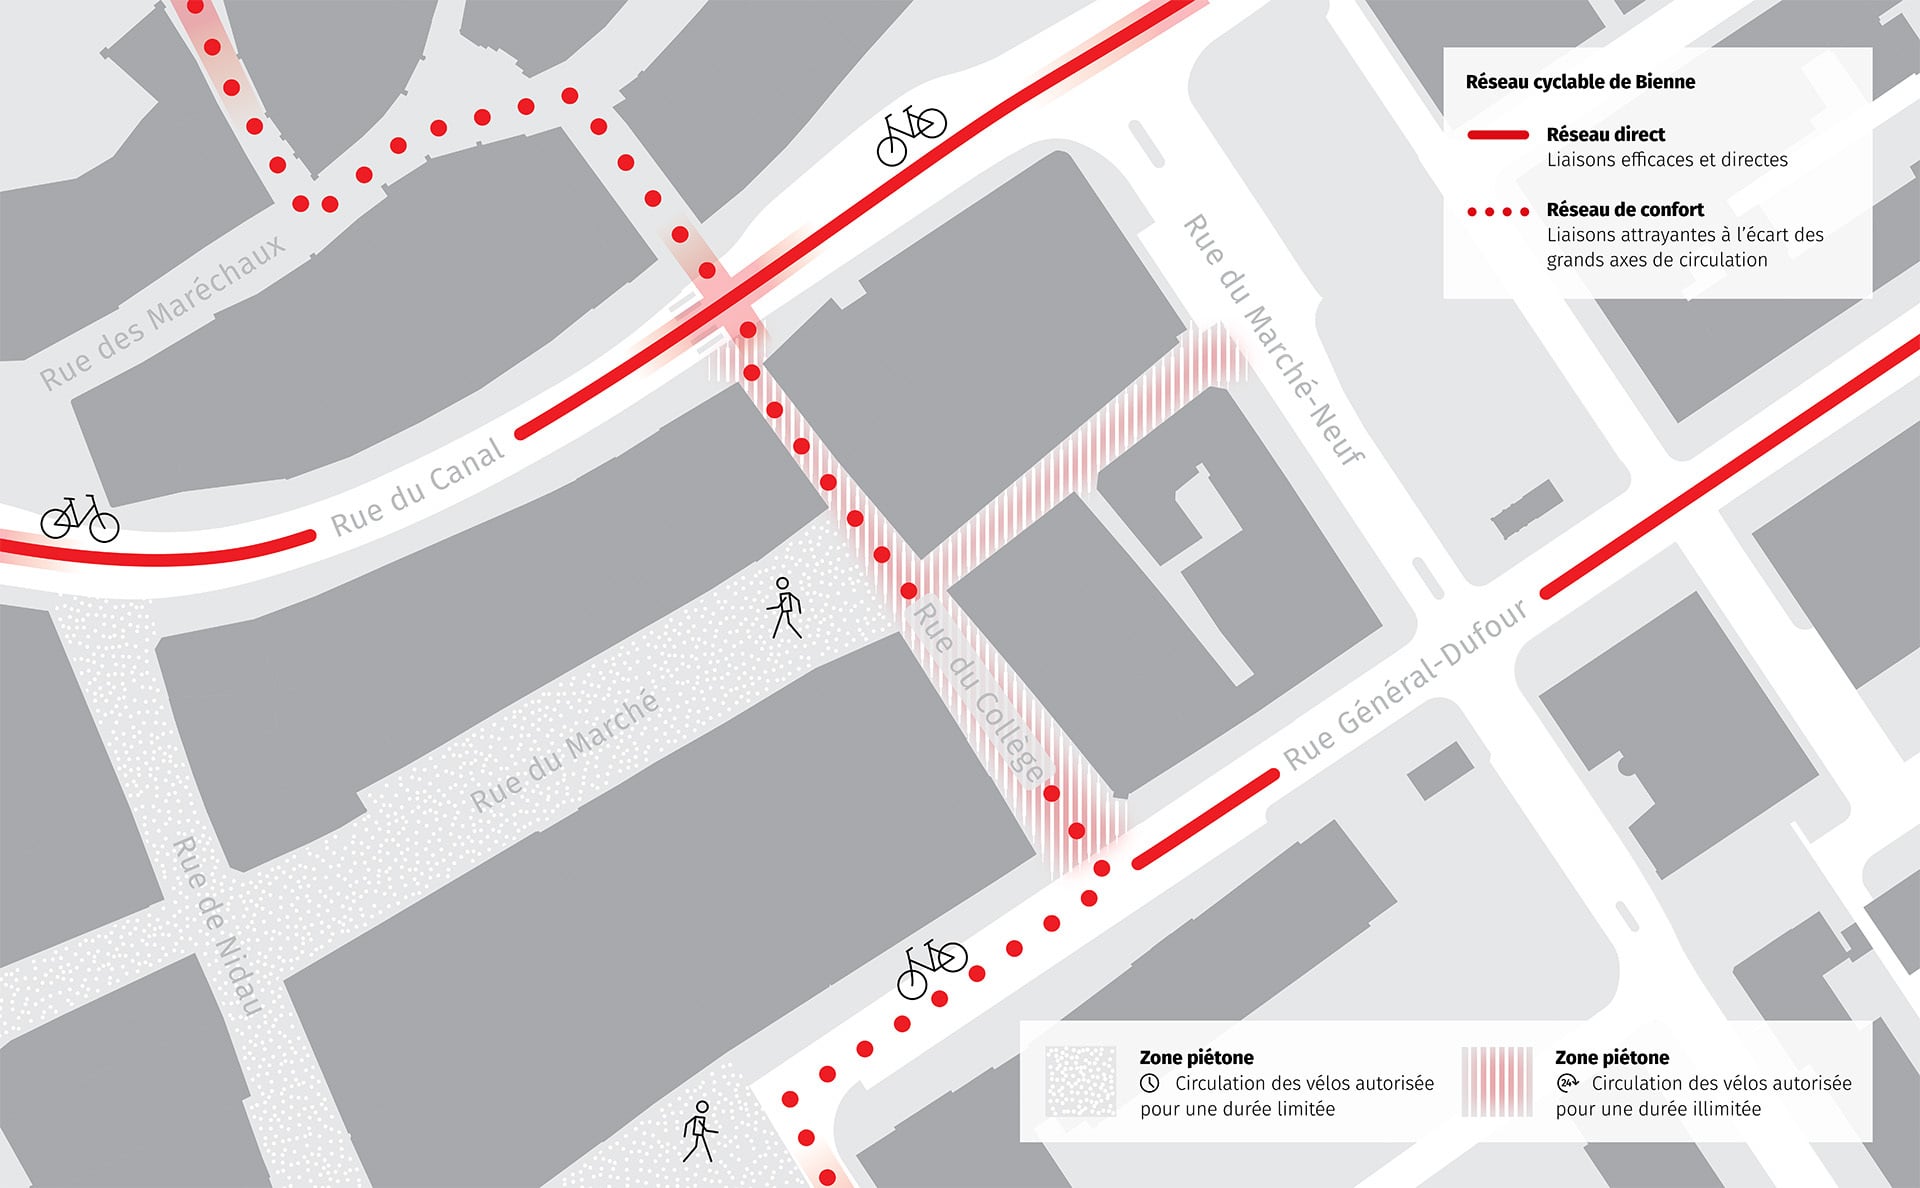 Extrait de carte de la rue de Collège; le réseau cyclable est marqué en rouge.